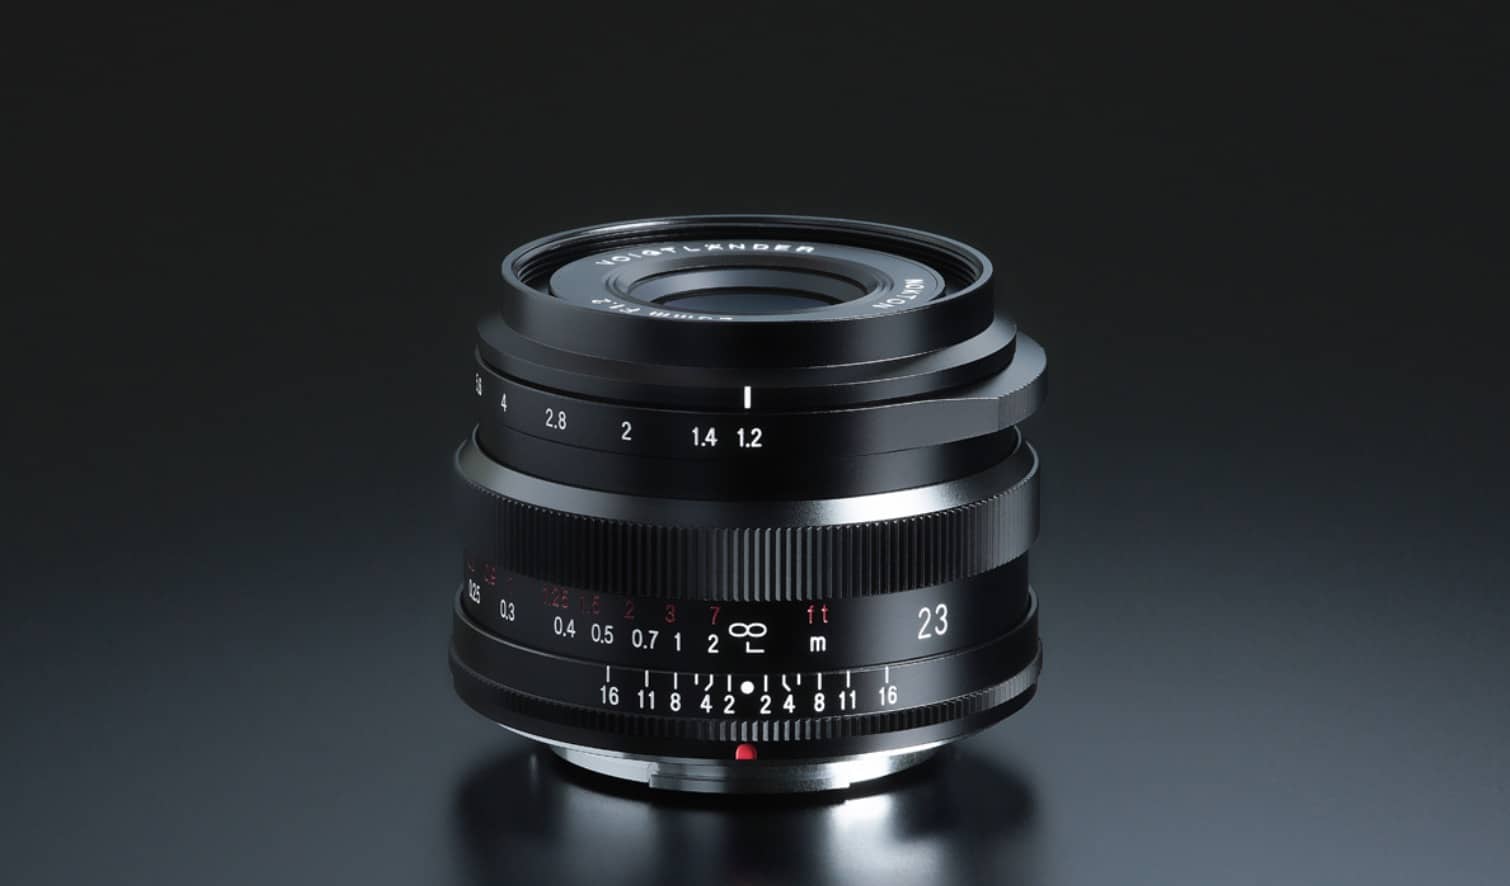 Cosina ra mắt ống kính NOKTON 23mm F1.2 Aspherical dành cho Fujifilm ngàm X